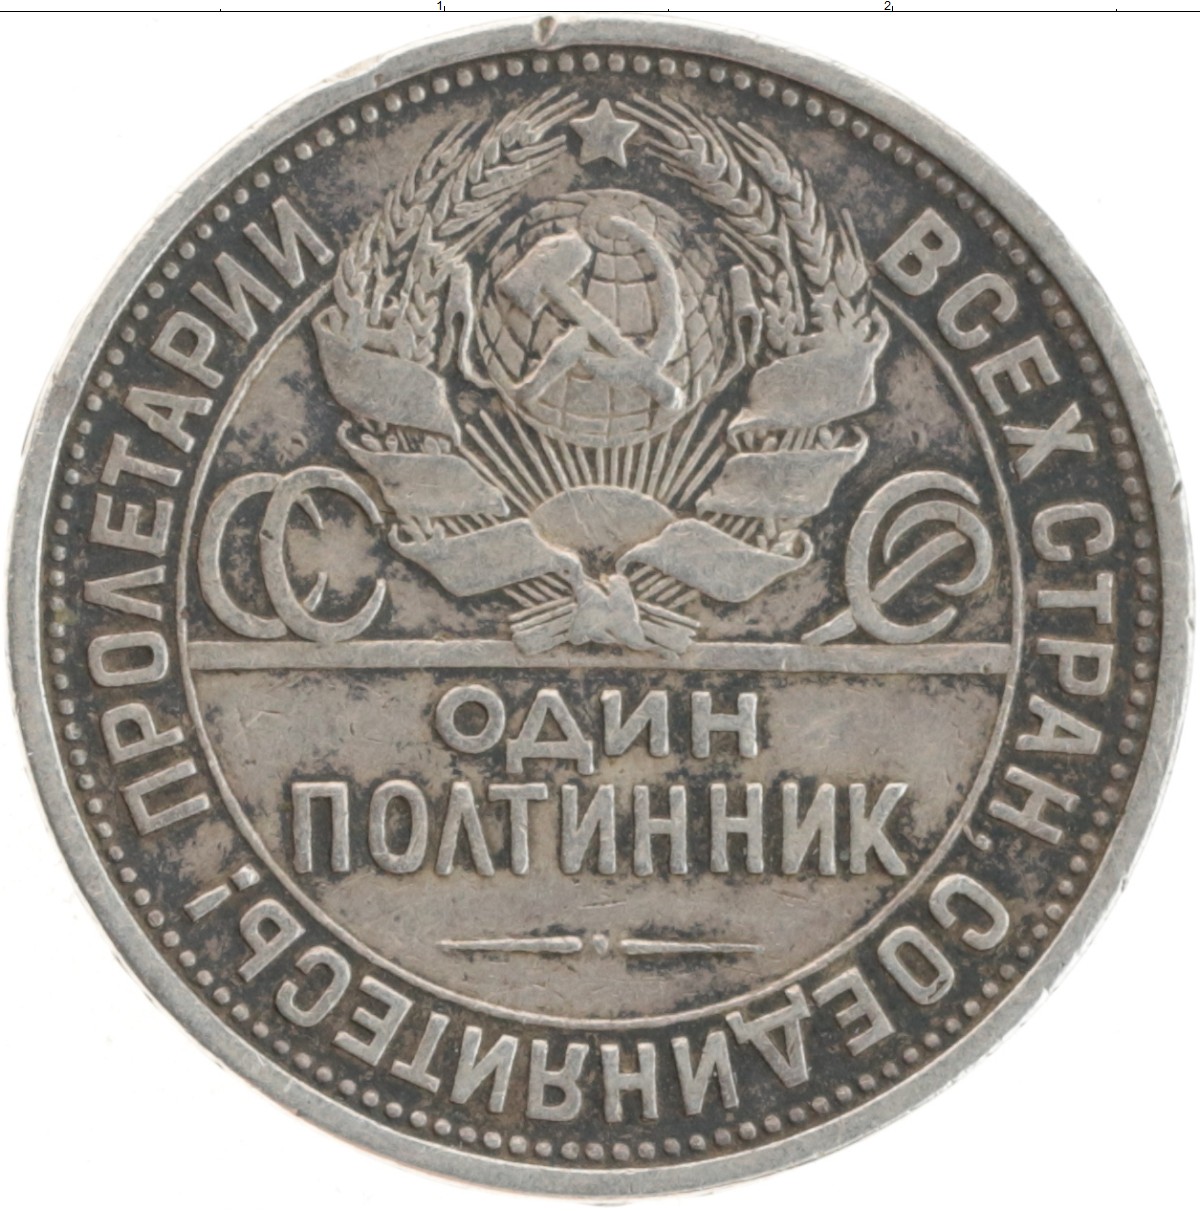 Серебряная монета 1924 цена. Монета серебряная 1924 полтинник. Монеты СССР полтинник 1924. Серебряная монета 1924 год полтинник. Монета 1924 года серебро один полтинник.